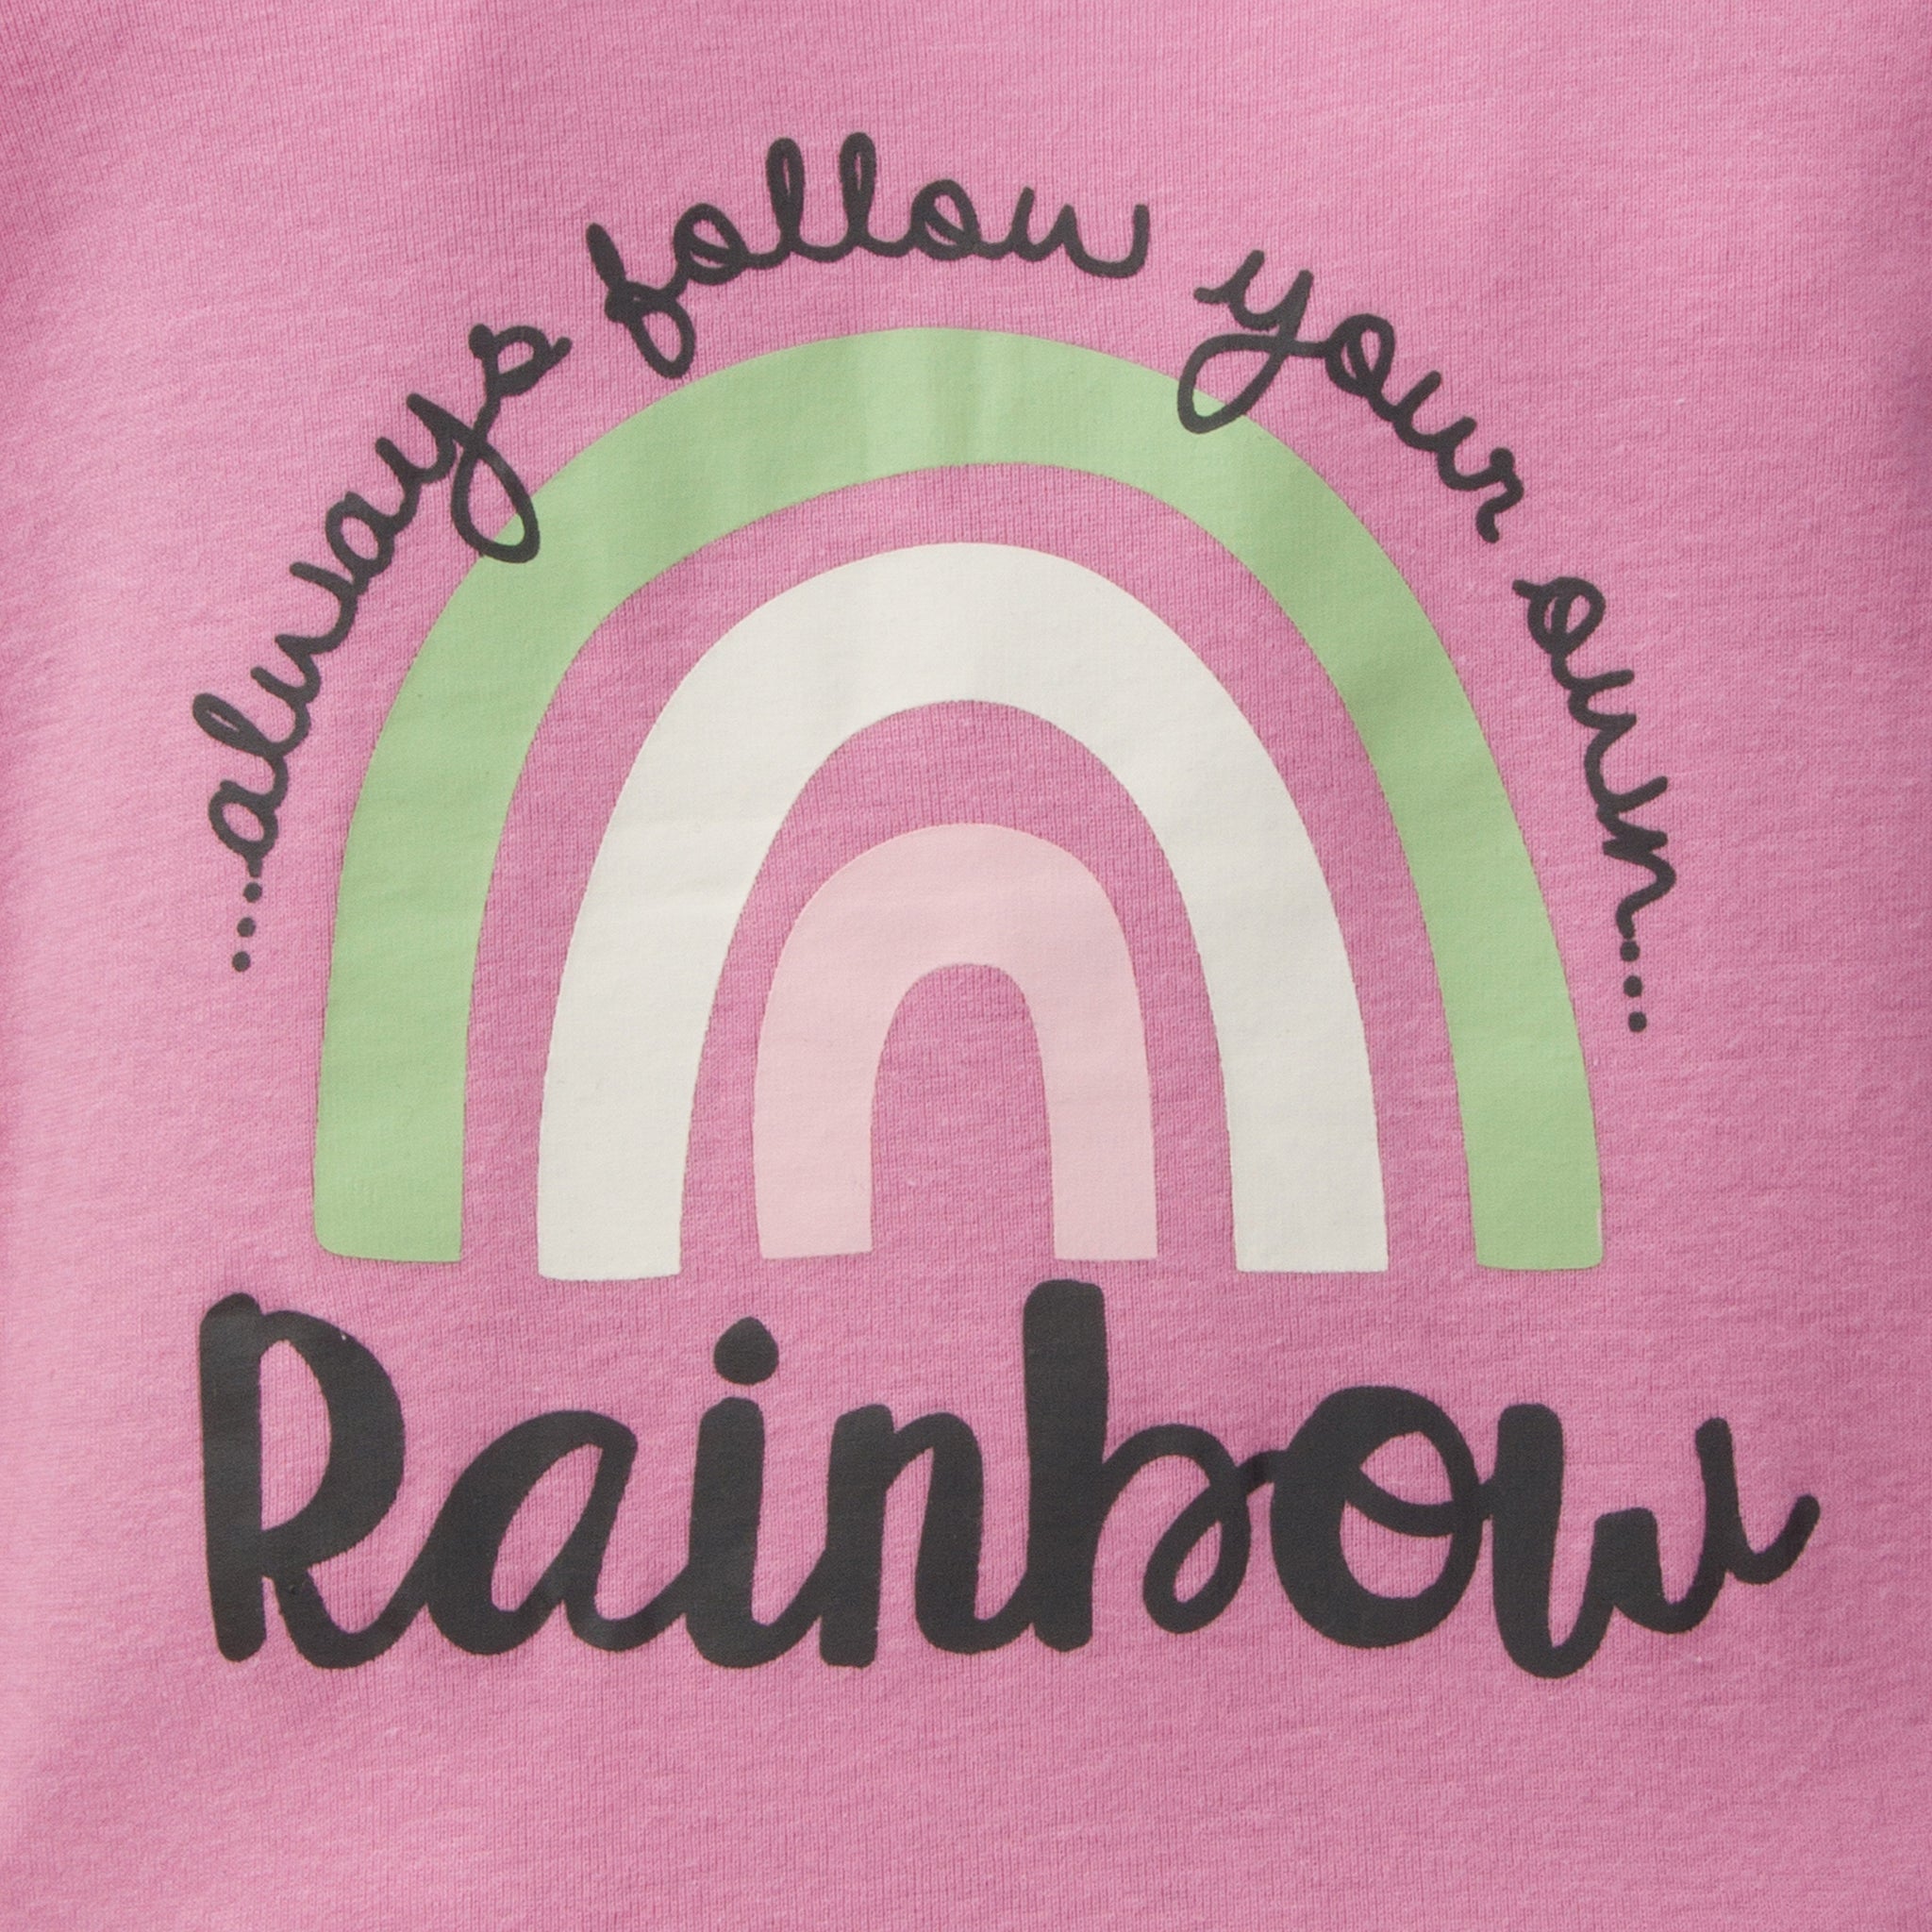 4-Piece Girls Rainbow Snug Fit Cotton Pajamas-Gerber Childrenswear Wholesale